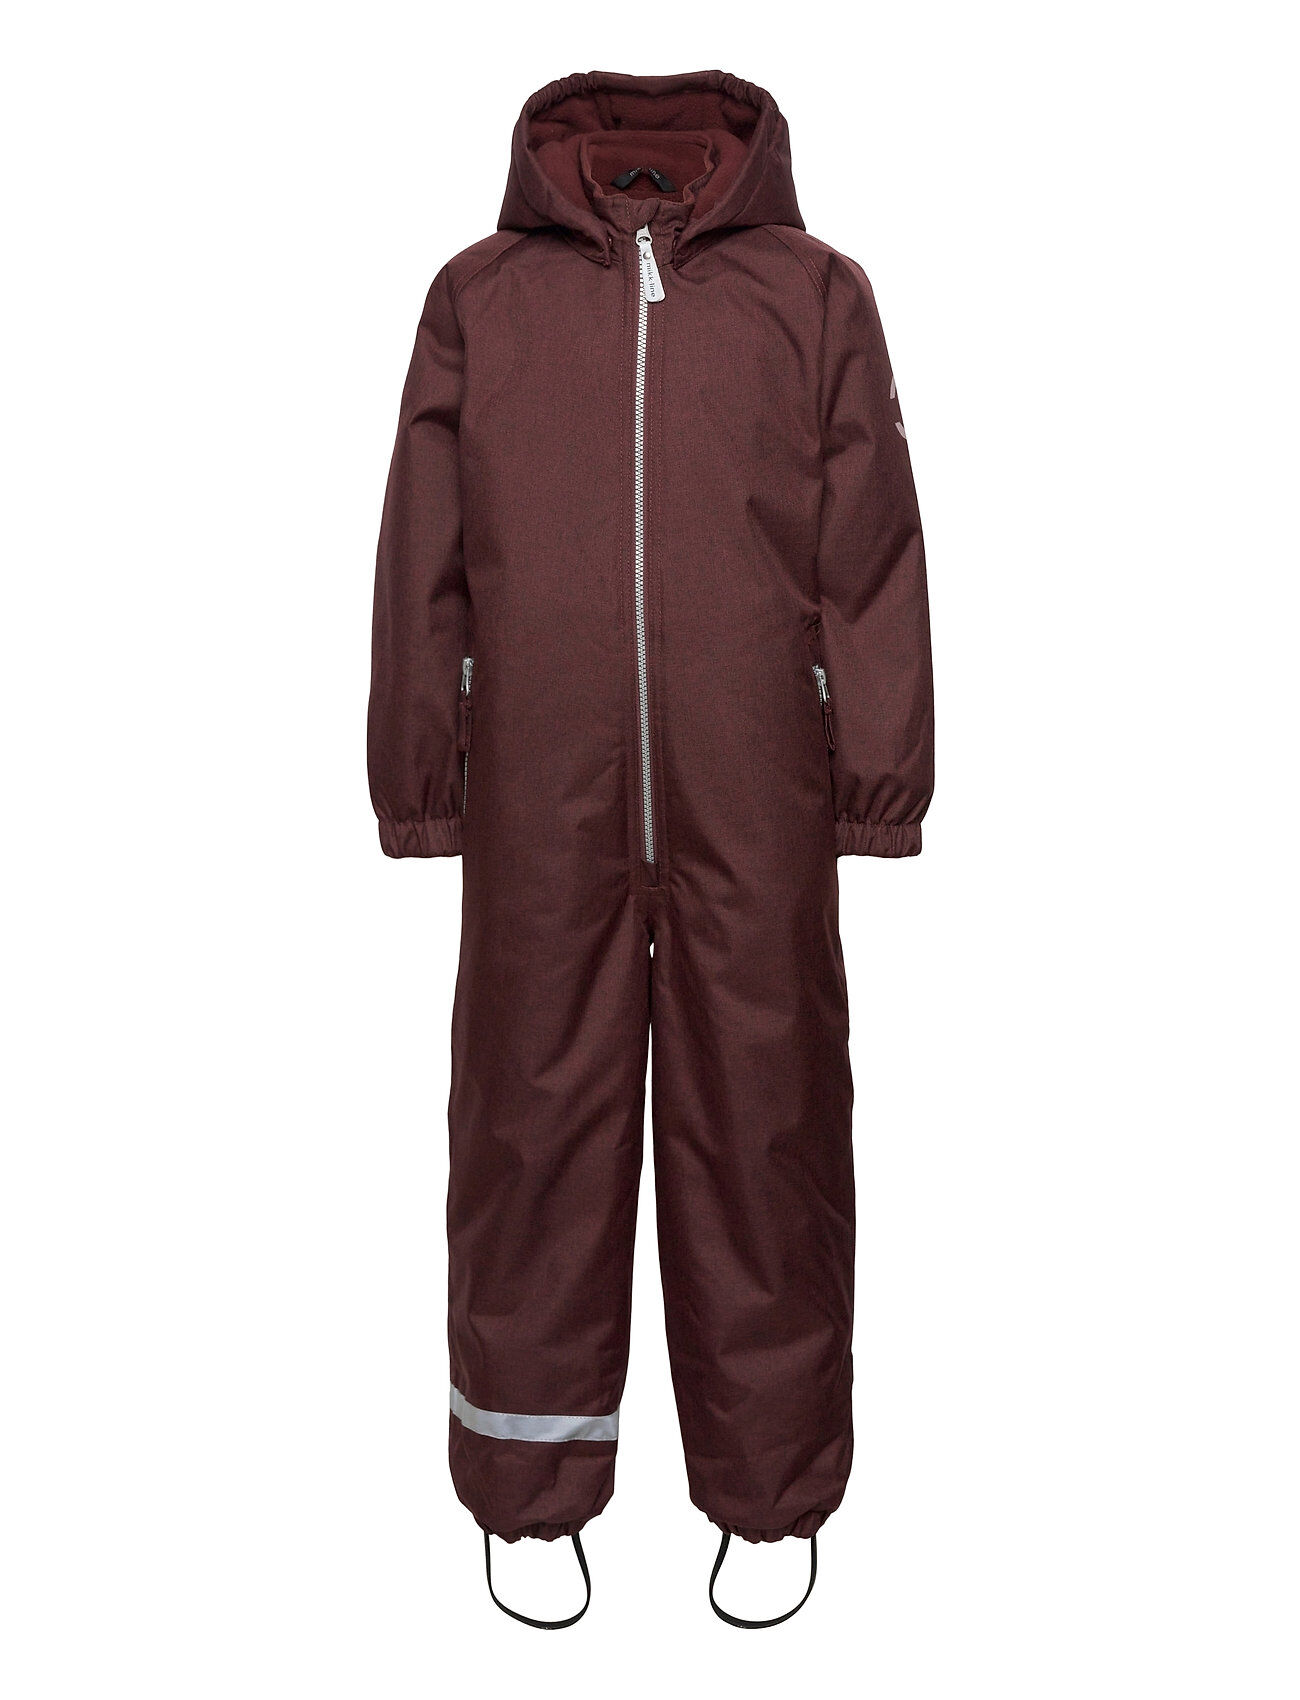 Mikk-Line Comfort Suit Outerwear Coveralls Rainwear Sets & Coveralls Rød Mikk-Line